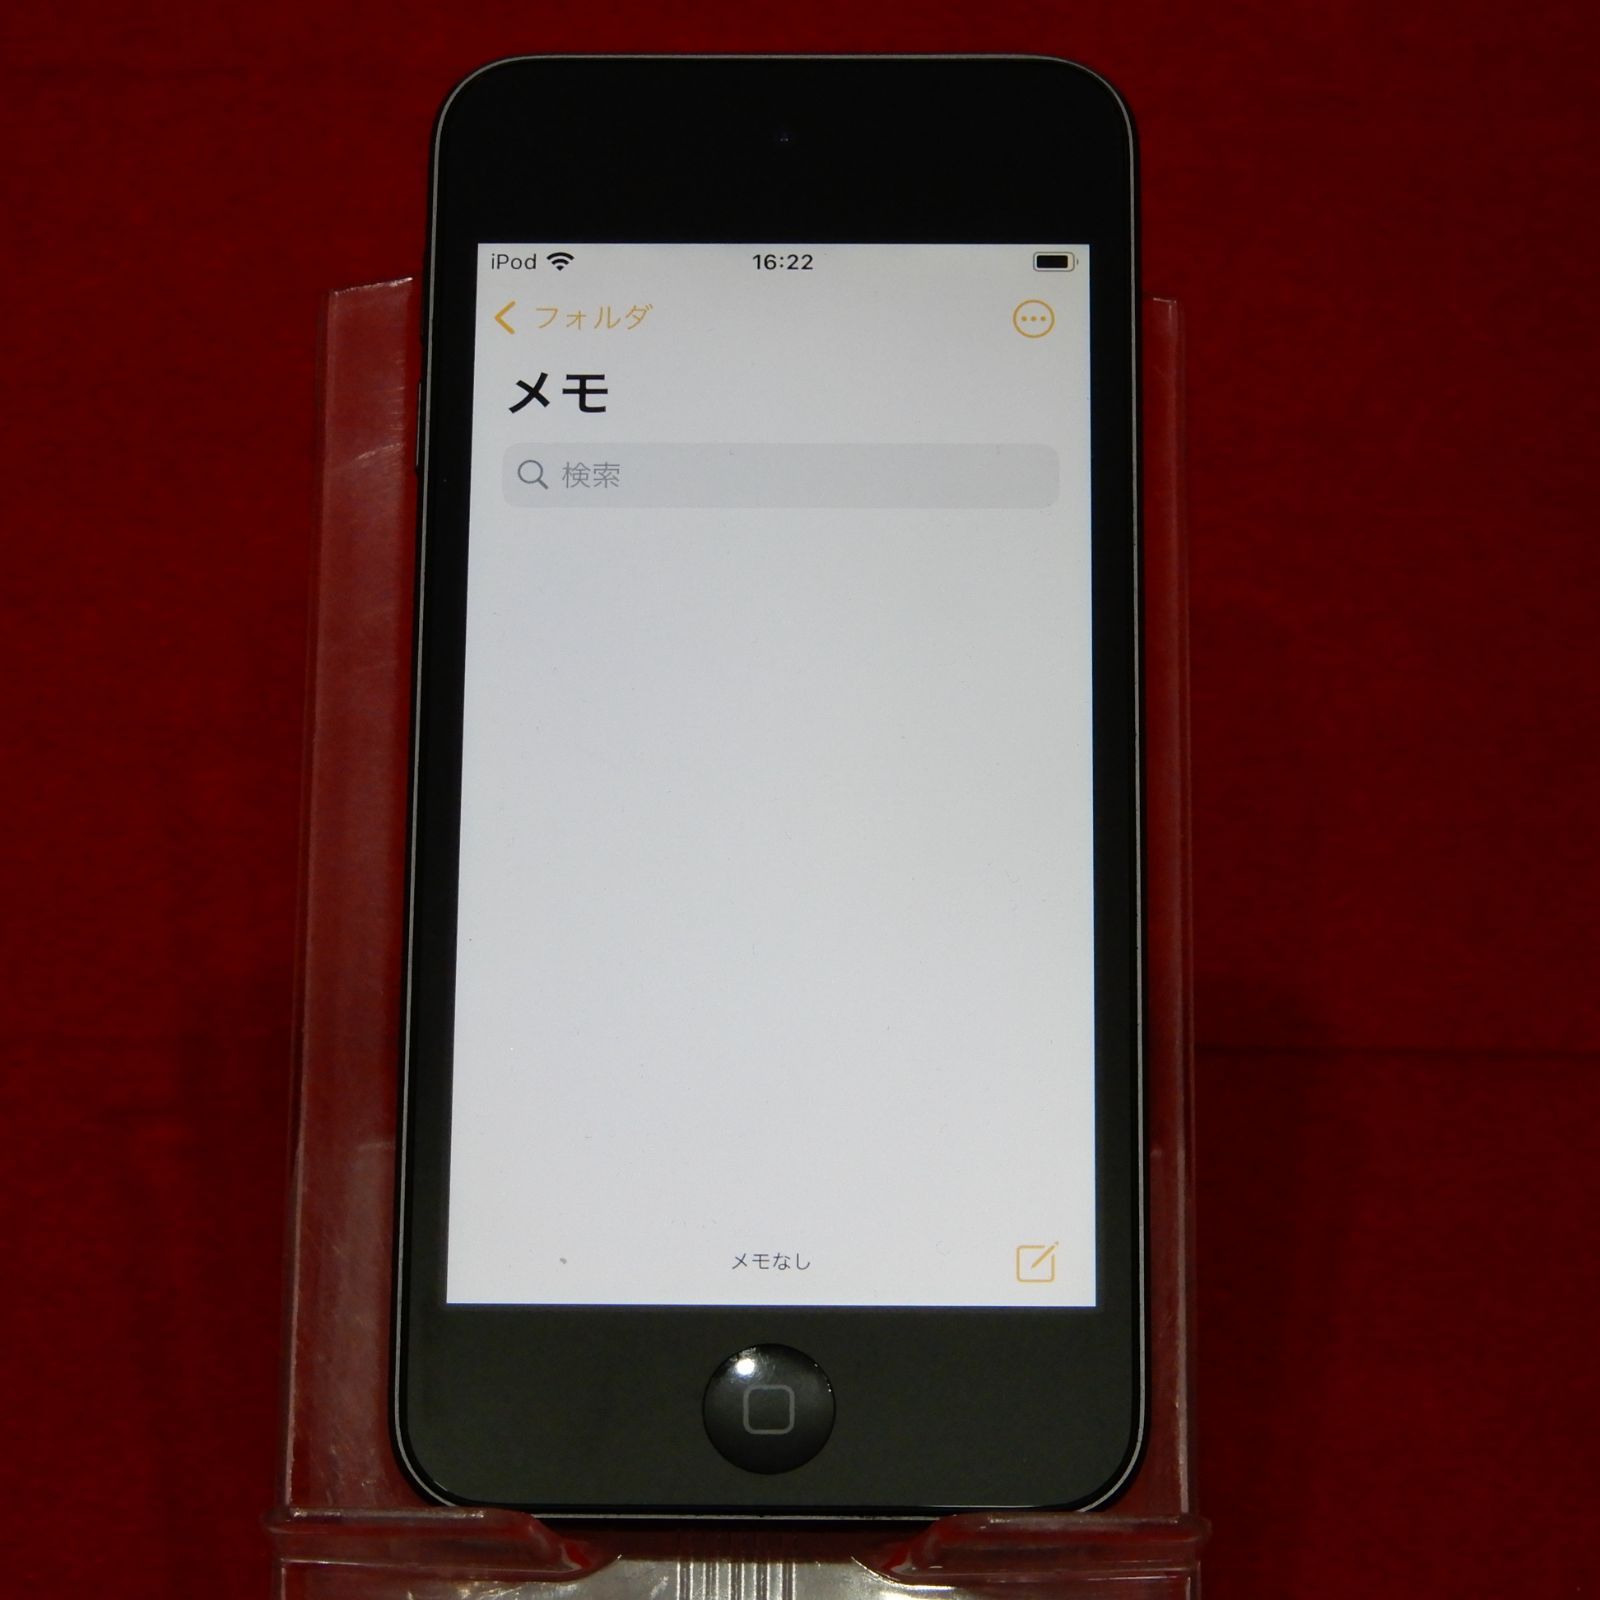 APPLE MVHW2J/A iPod touch 第7世代 32GB スペースグレイ - メルカリ